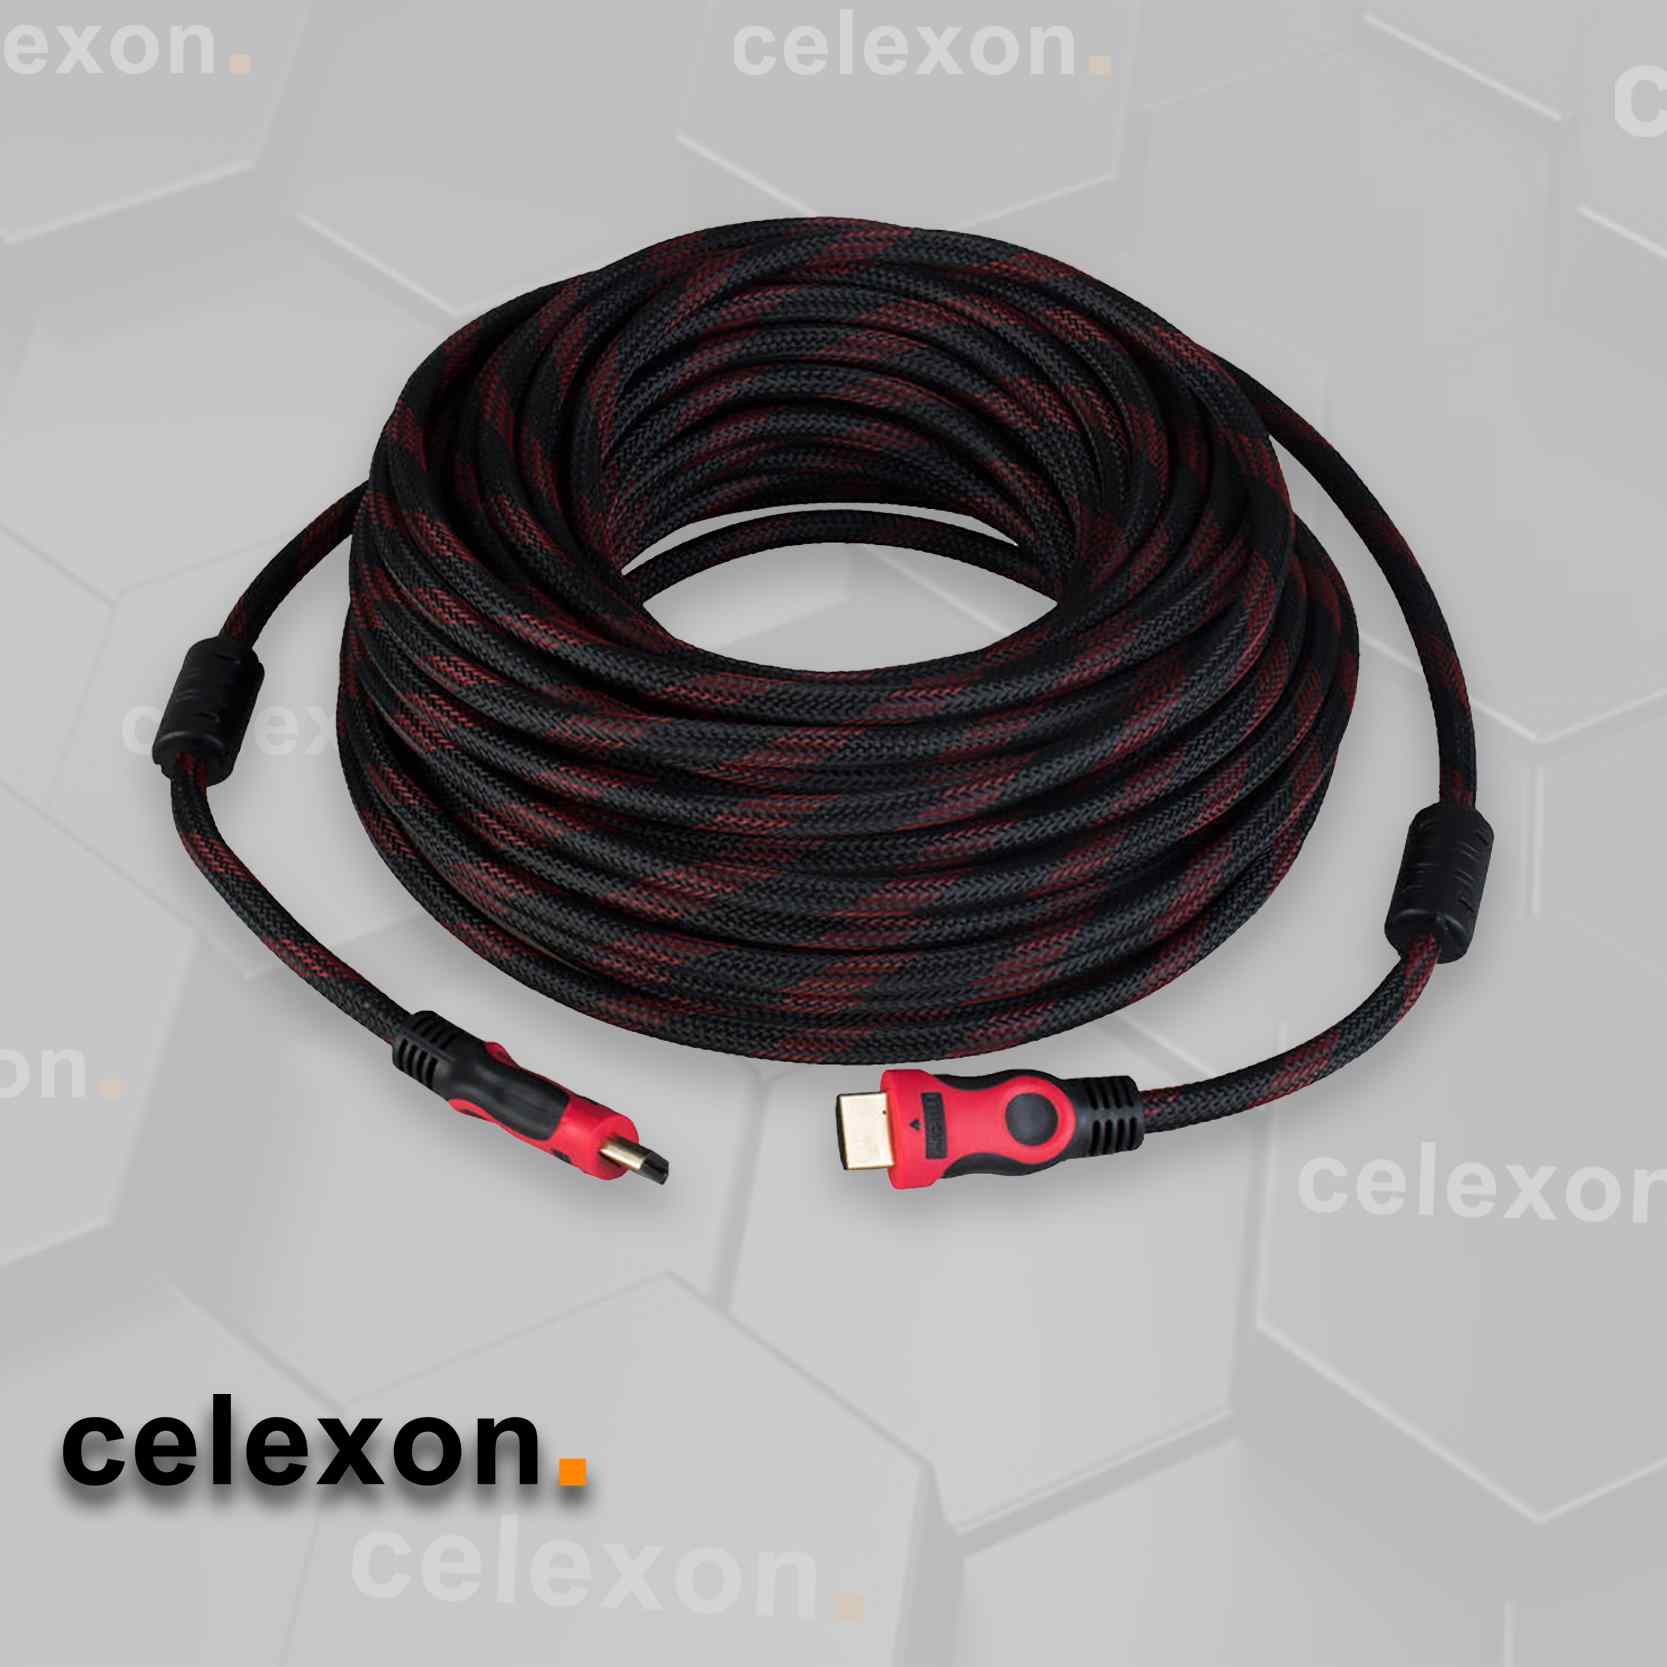 CE1810 HDMI Cable CE1810